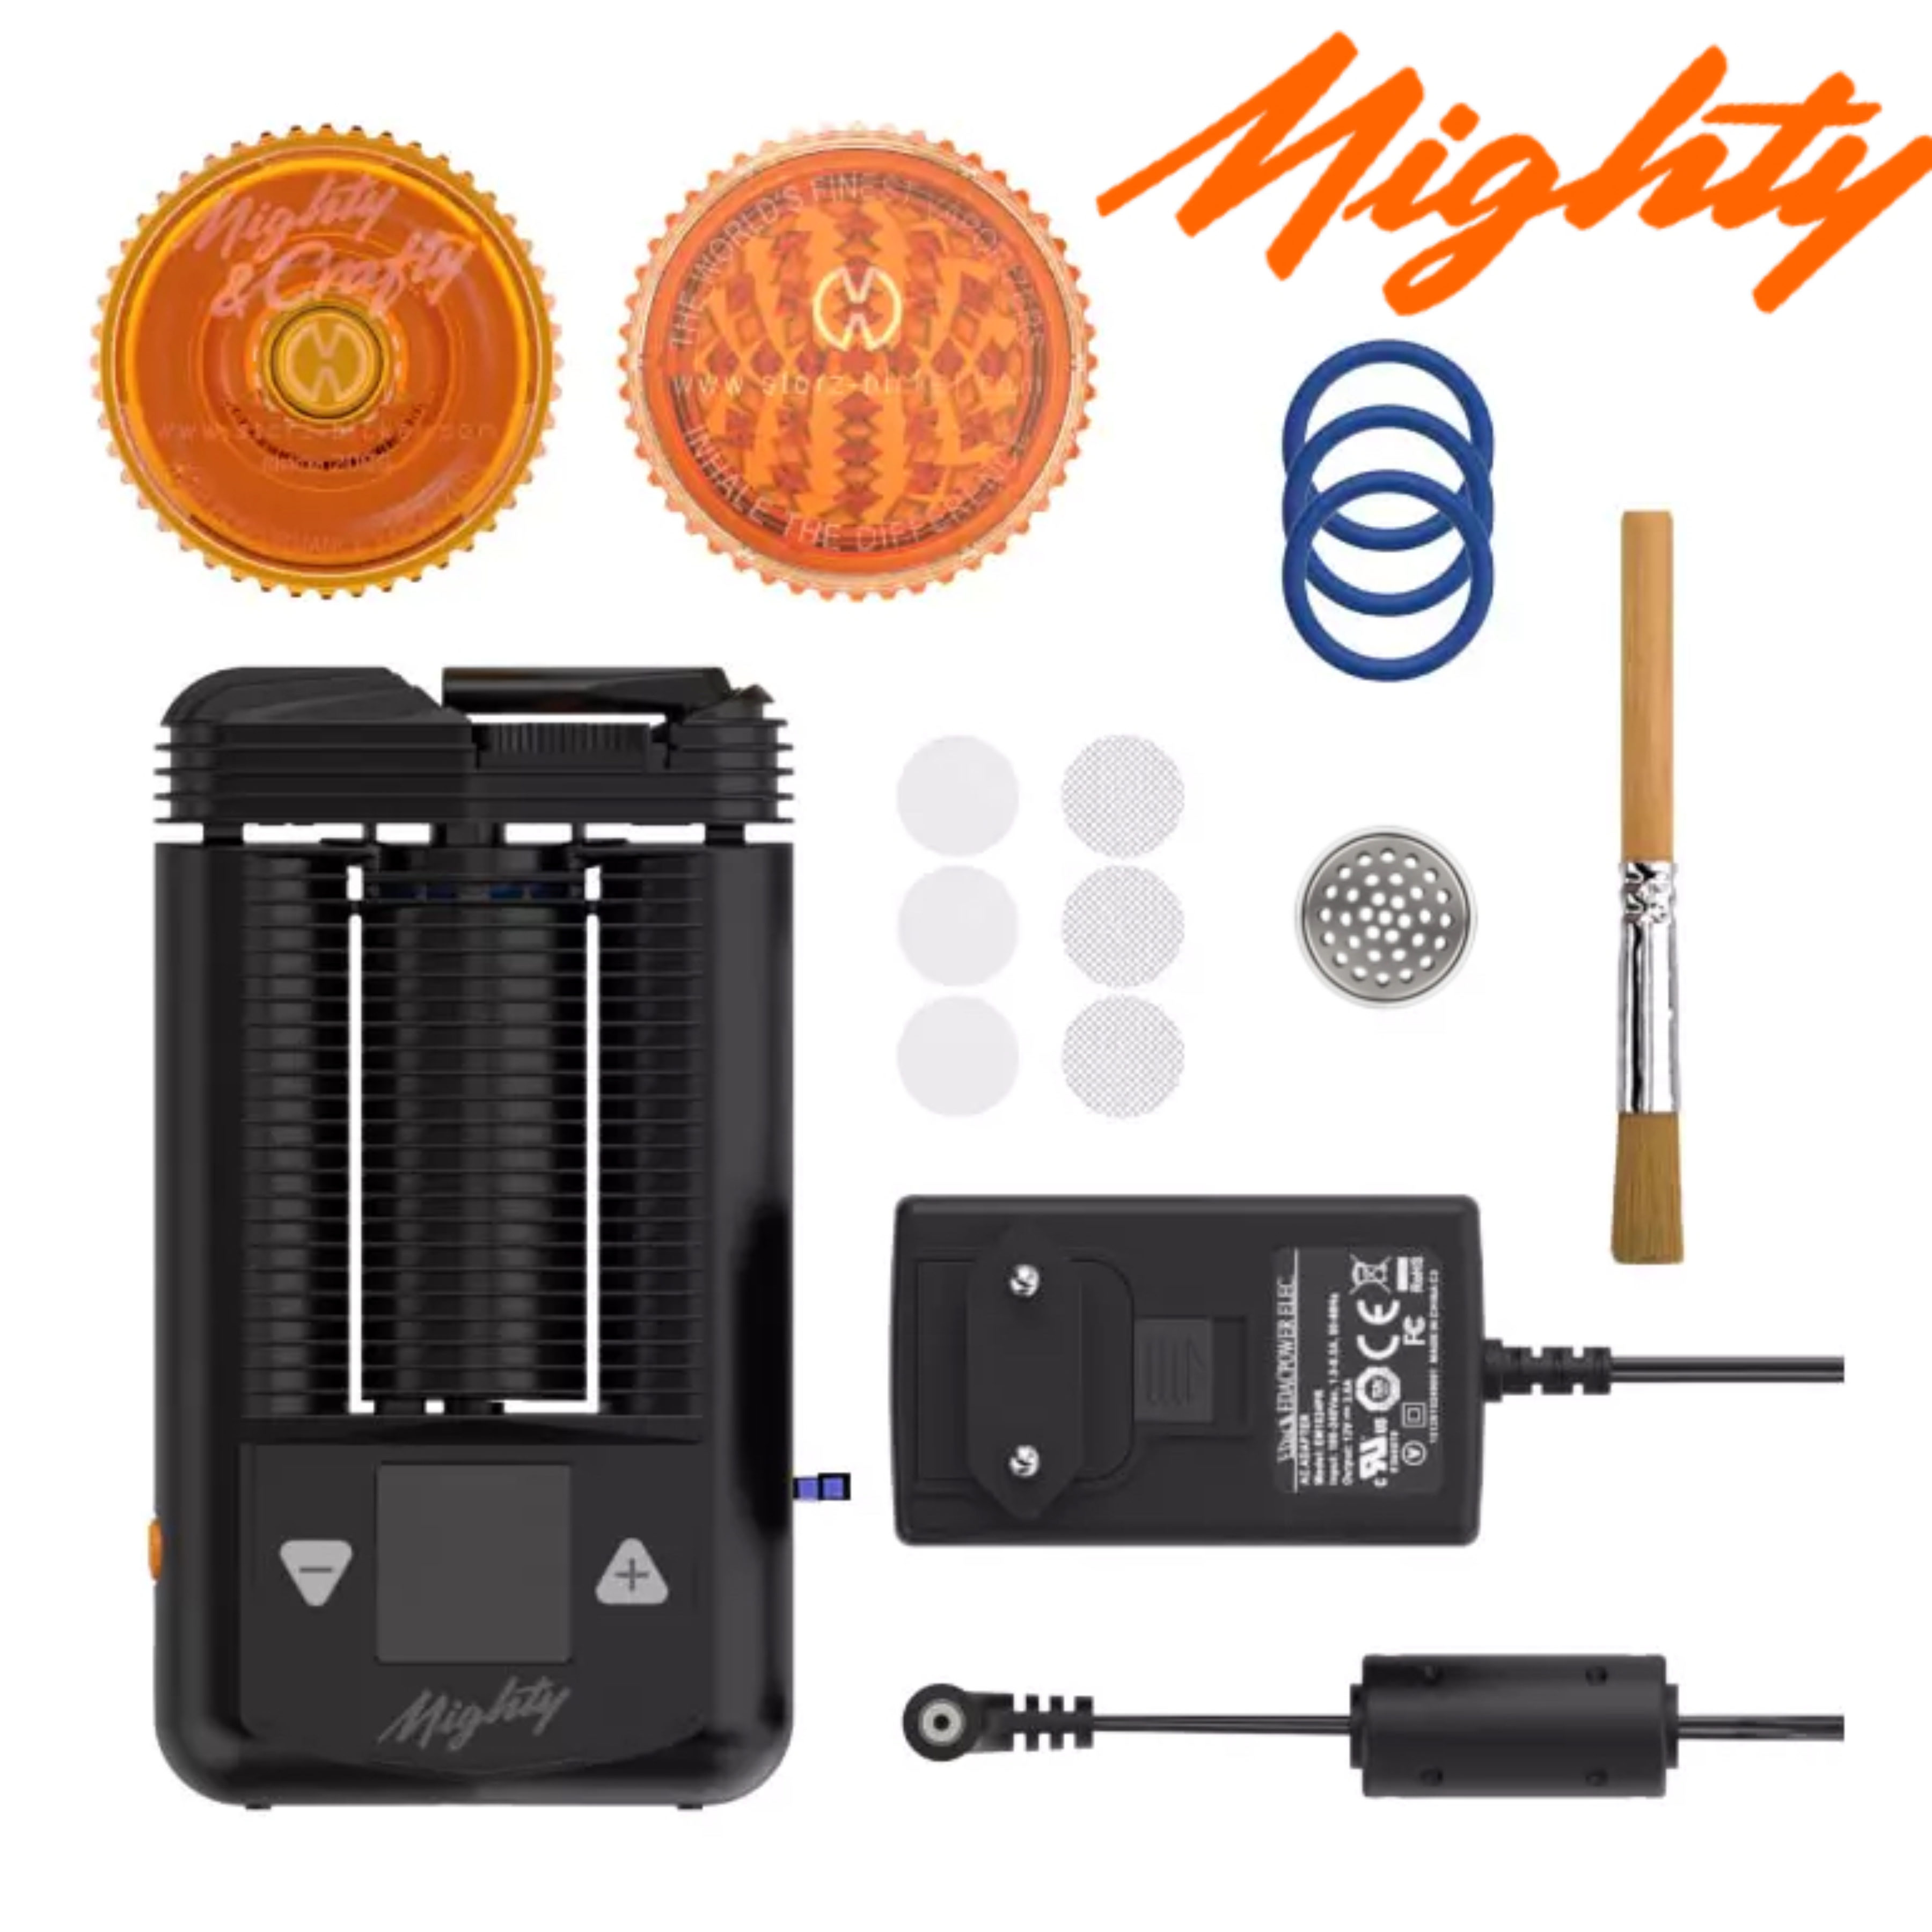 Mighty Vaporisateur Portable • Acheter • Livraison Gratuite